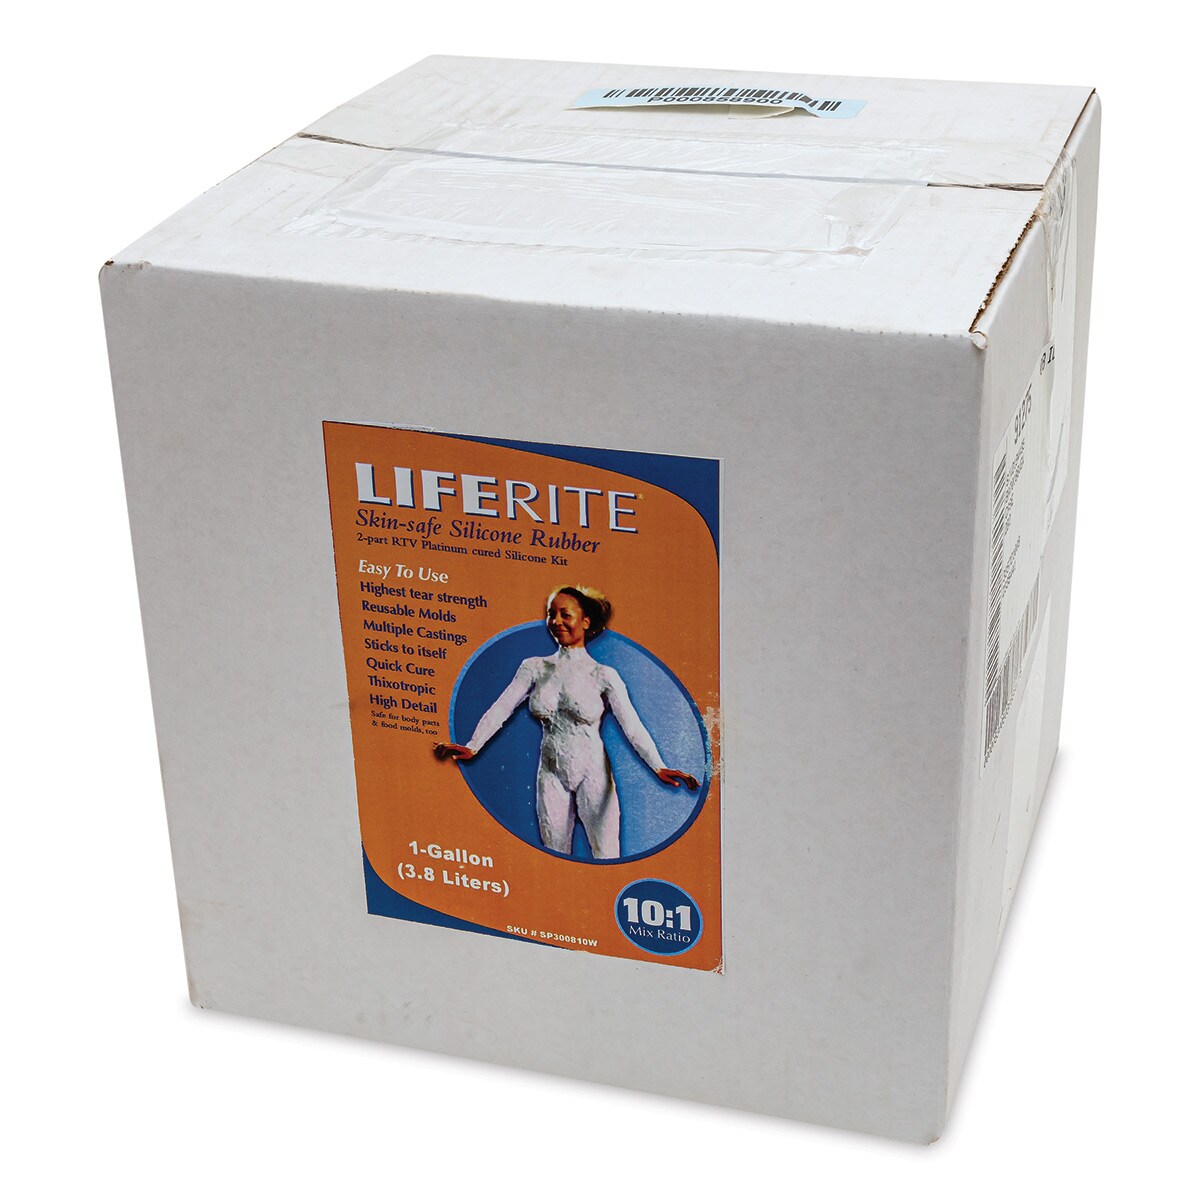 ArtMolds LifeRite - 3.8 L